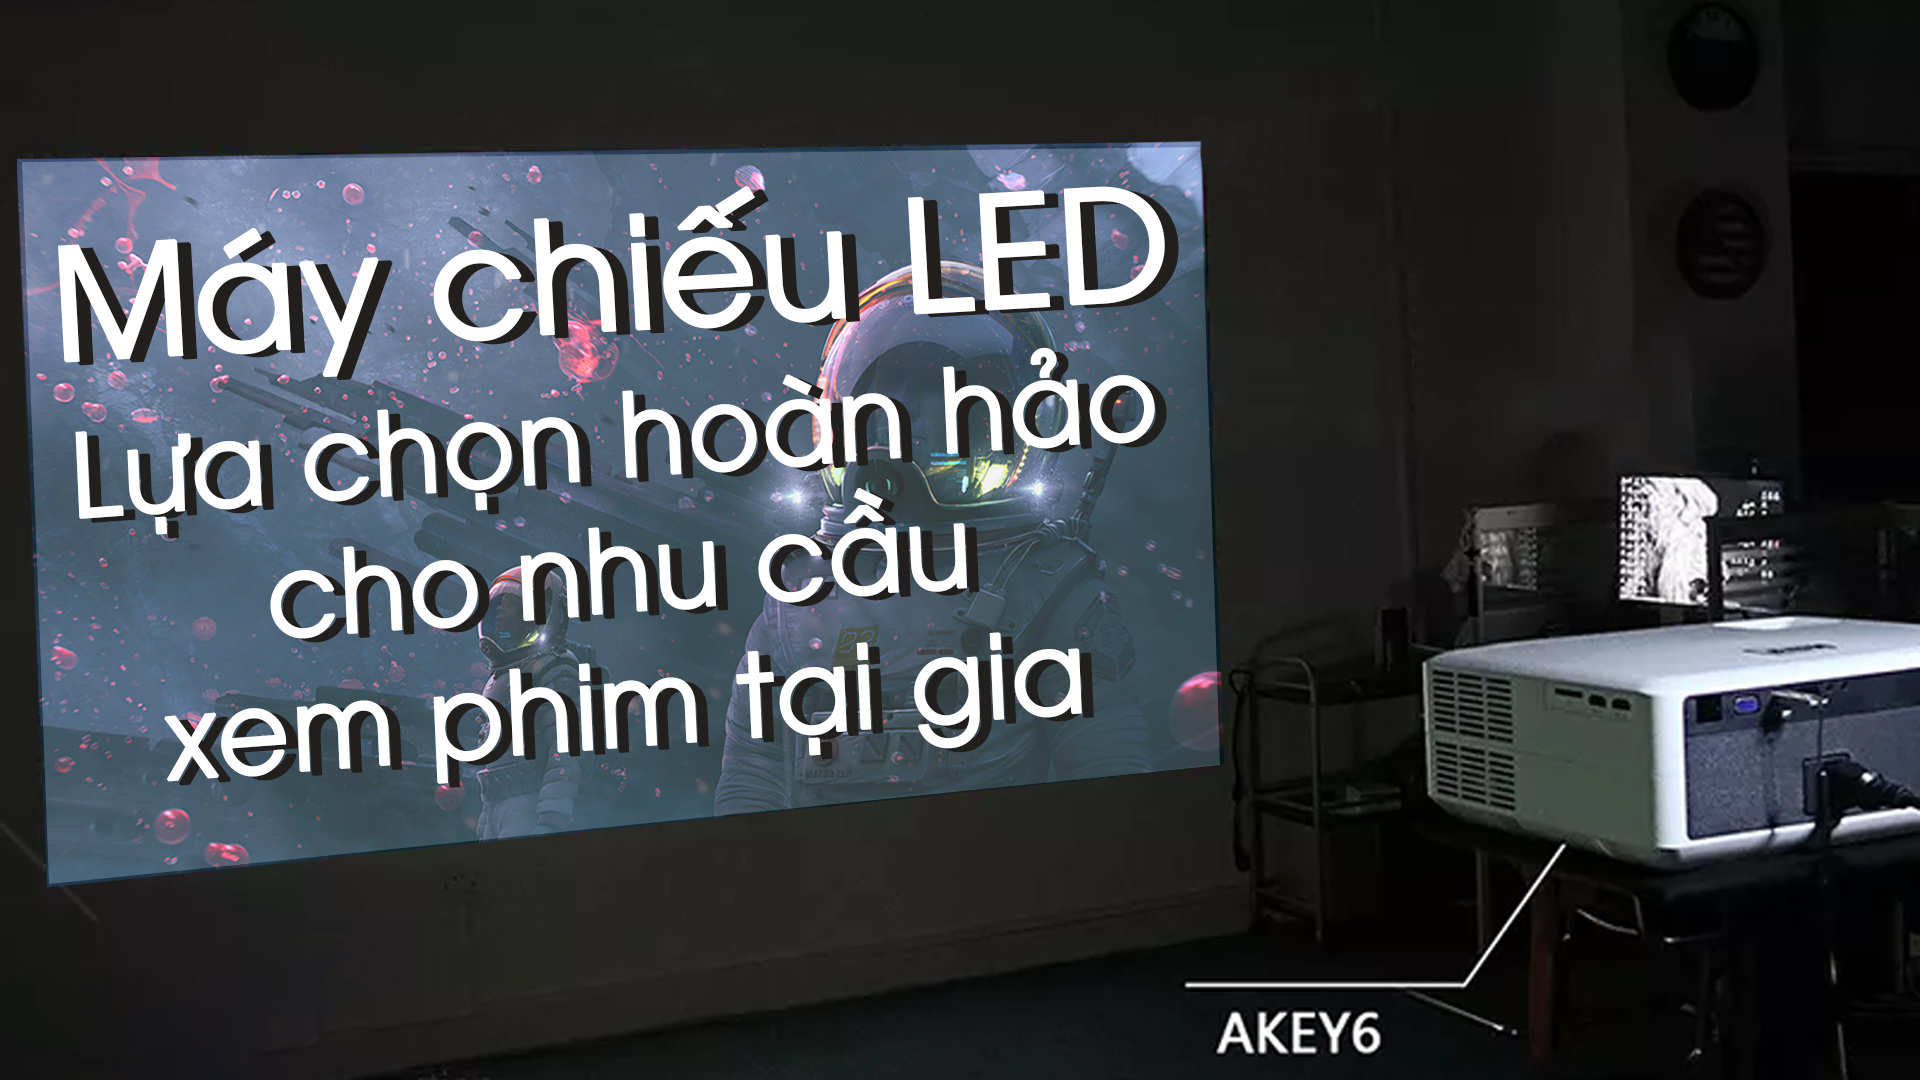 Máy chiếu LED: Bạn đang tìm kiếm một giải pháp để tận hưởng nơi ở khoảng không gian ấm áp với bạn bè và gia đình của mình? Máy chiếu LED là sự lựa chọn hoàn hảo cho bạn. Họ cho ra hình ảnh đẹp và trung thực nhất từ bất kỳ khoảng cách và kích thước phòng nào, tạo ra sự giải trí hoàn hảo trong mọi dịp.